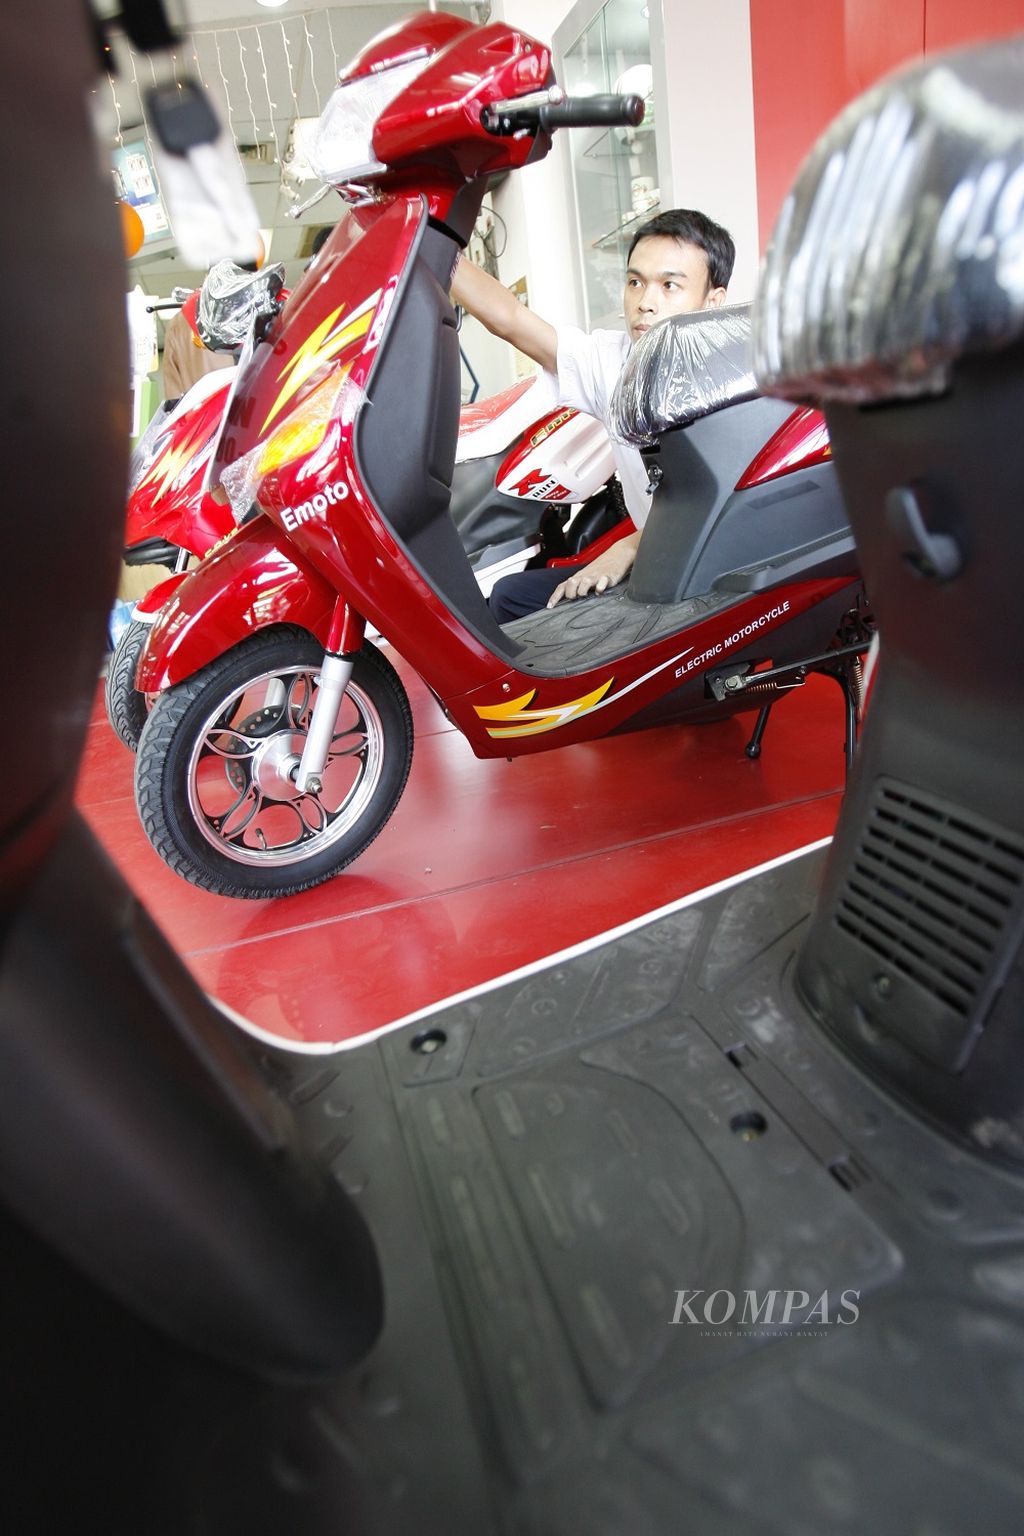 Sepeda motor listrik dipajang di sebuah gerai di kawasan Jalan Matraman, Jakarta, Selasa (23/9/2008). Sepeda motor listrik ini dijual dengan harga Rp 6 juta-Rp 8 juta per unit. Kenaikan harga bahan bakar minyak membuka peluang bisnis bagi industri motor listrik.